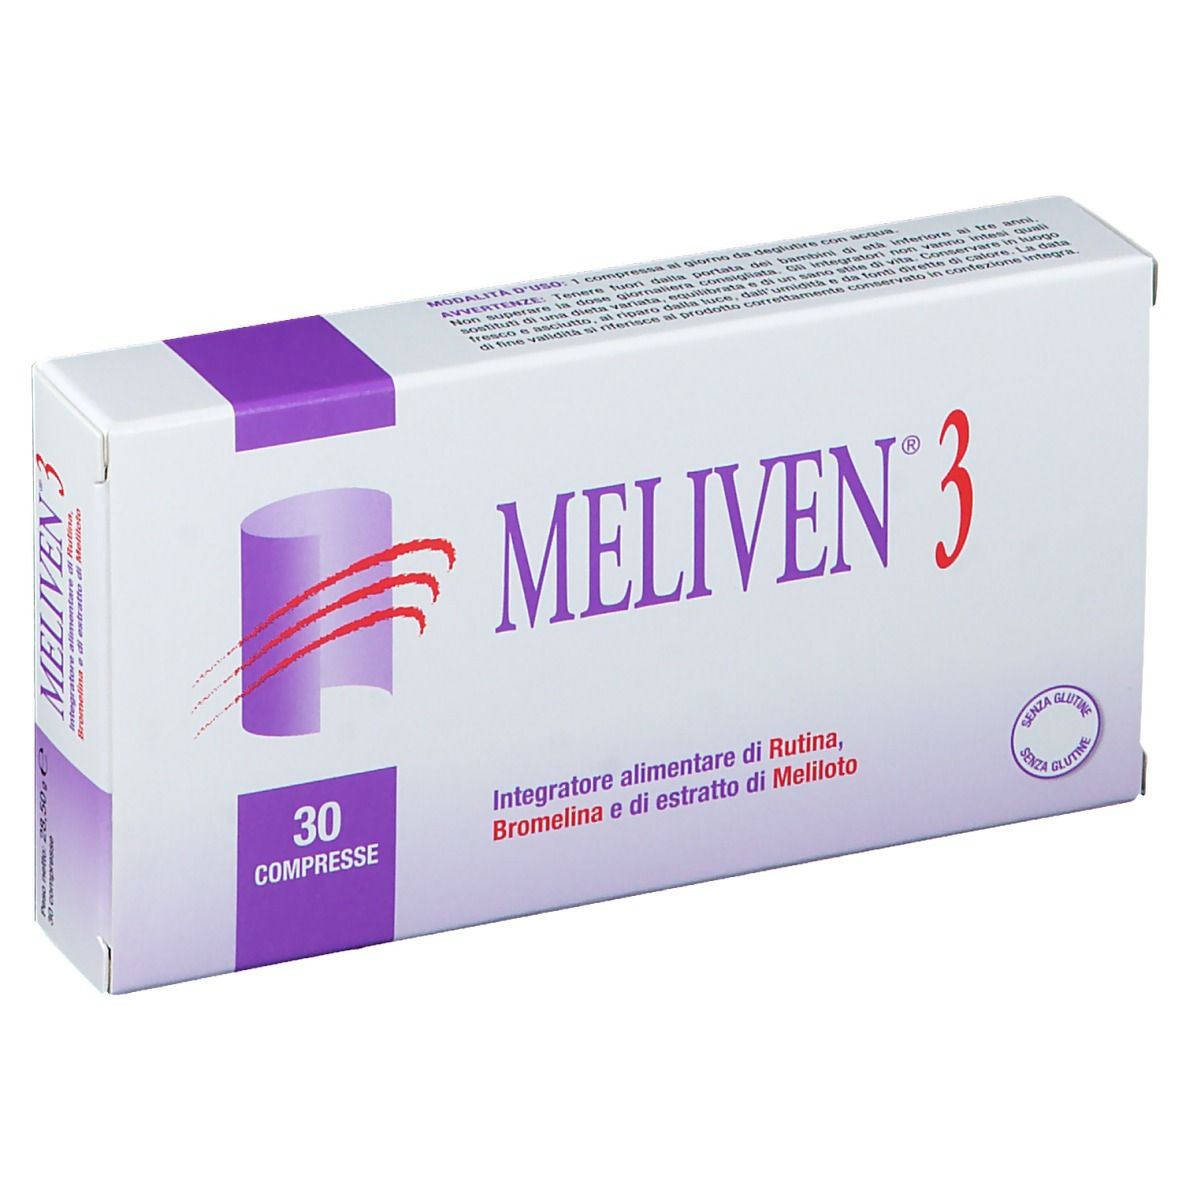 MELIVEN® 3